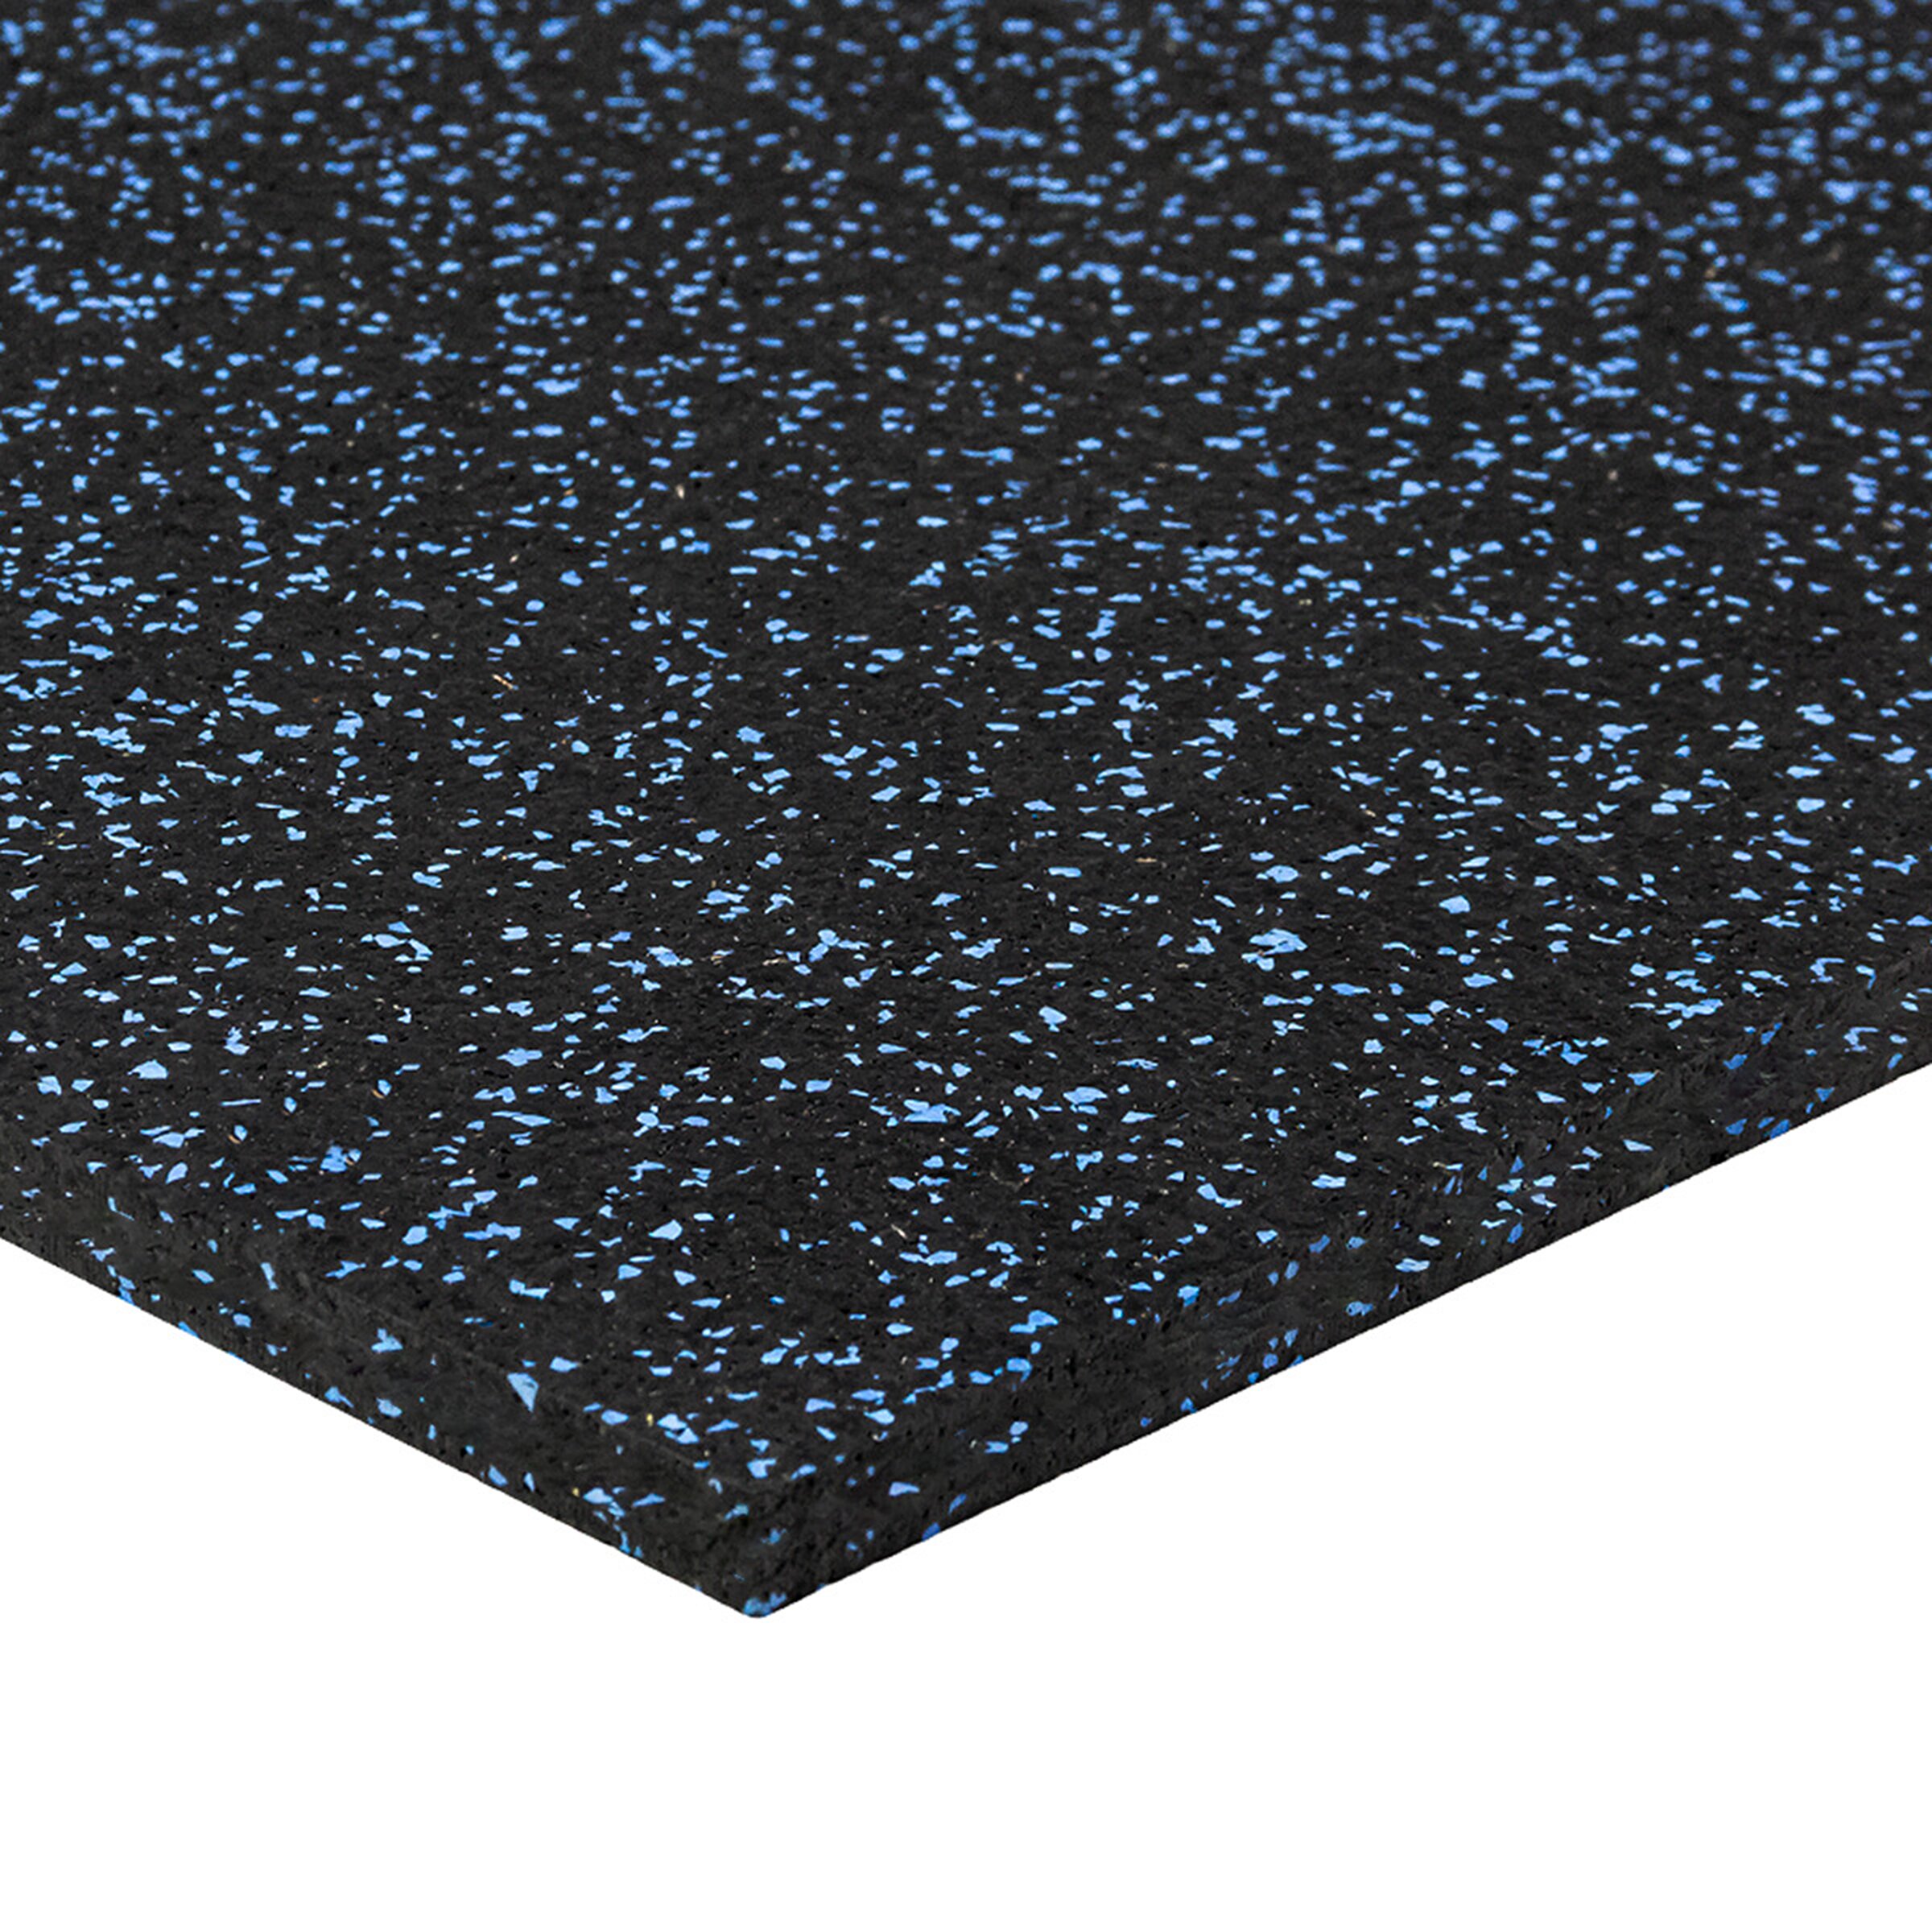 Černo-modrá gumová modulová puzzle dlažba FLOMA FitFlo SF1050 - délka 50 cm, šířka 50 cm, výška 1,6 cm